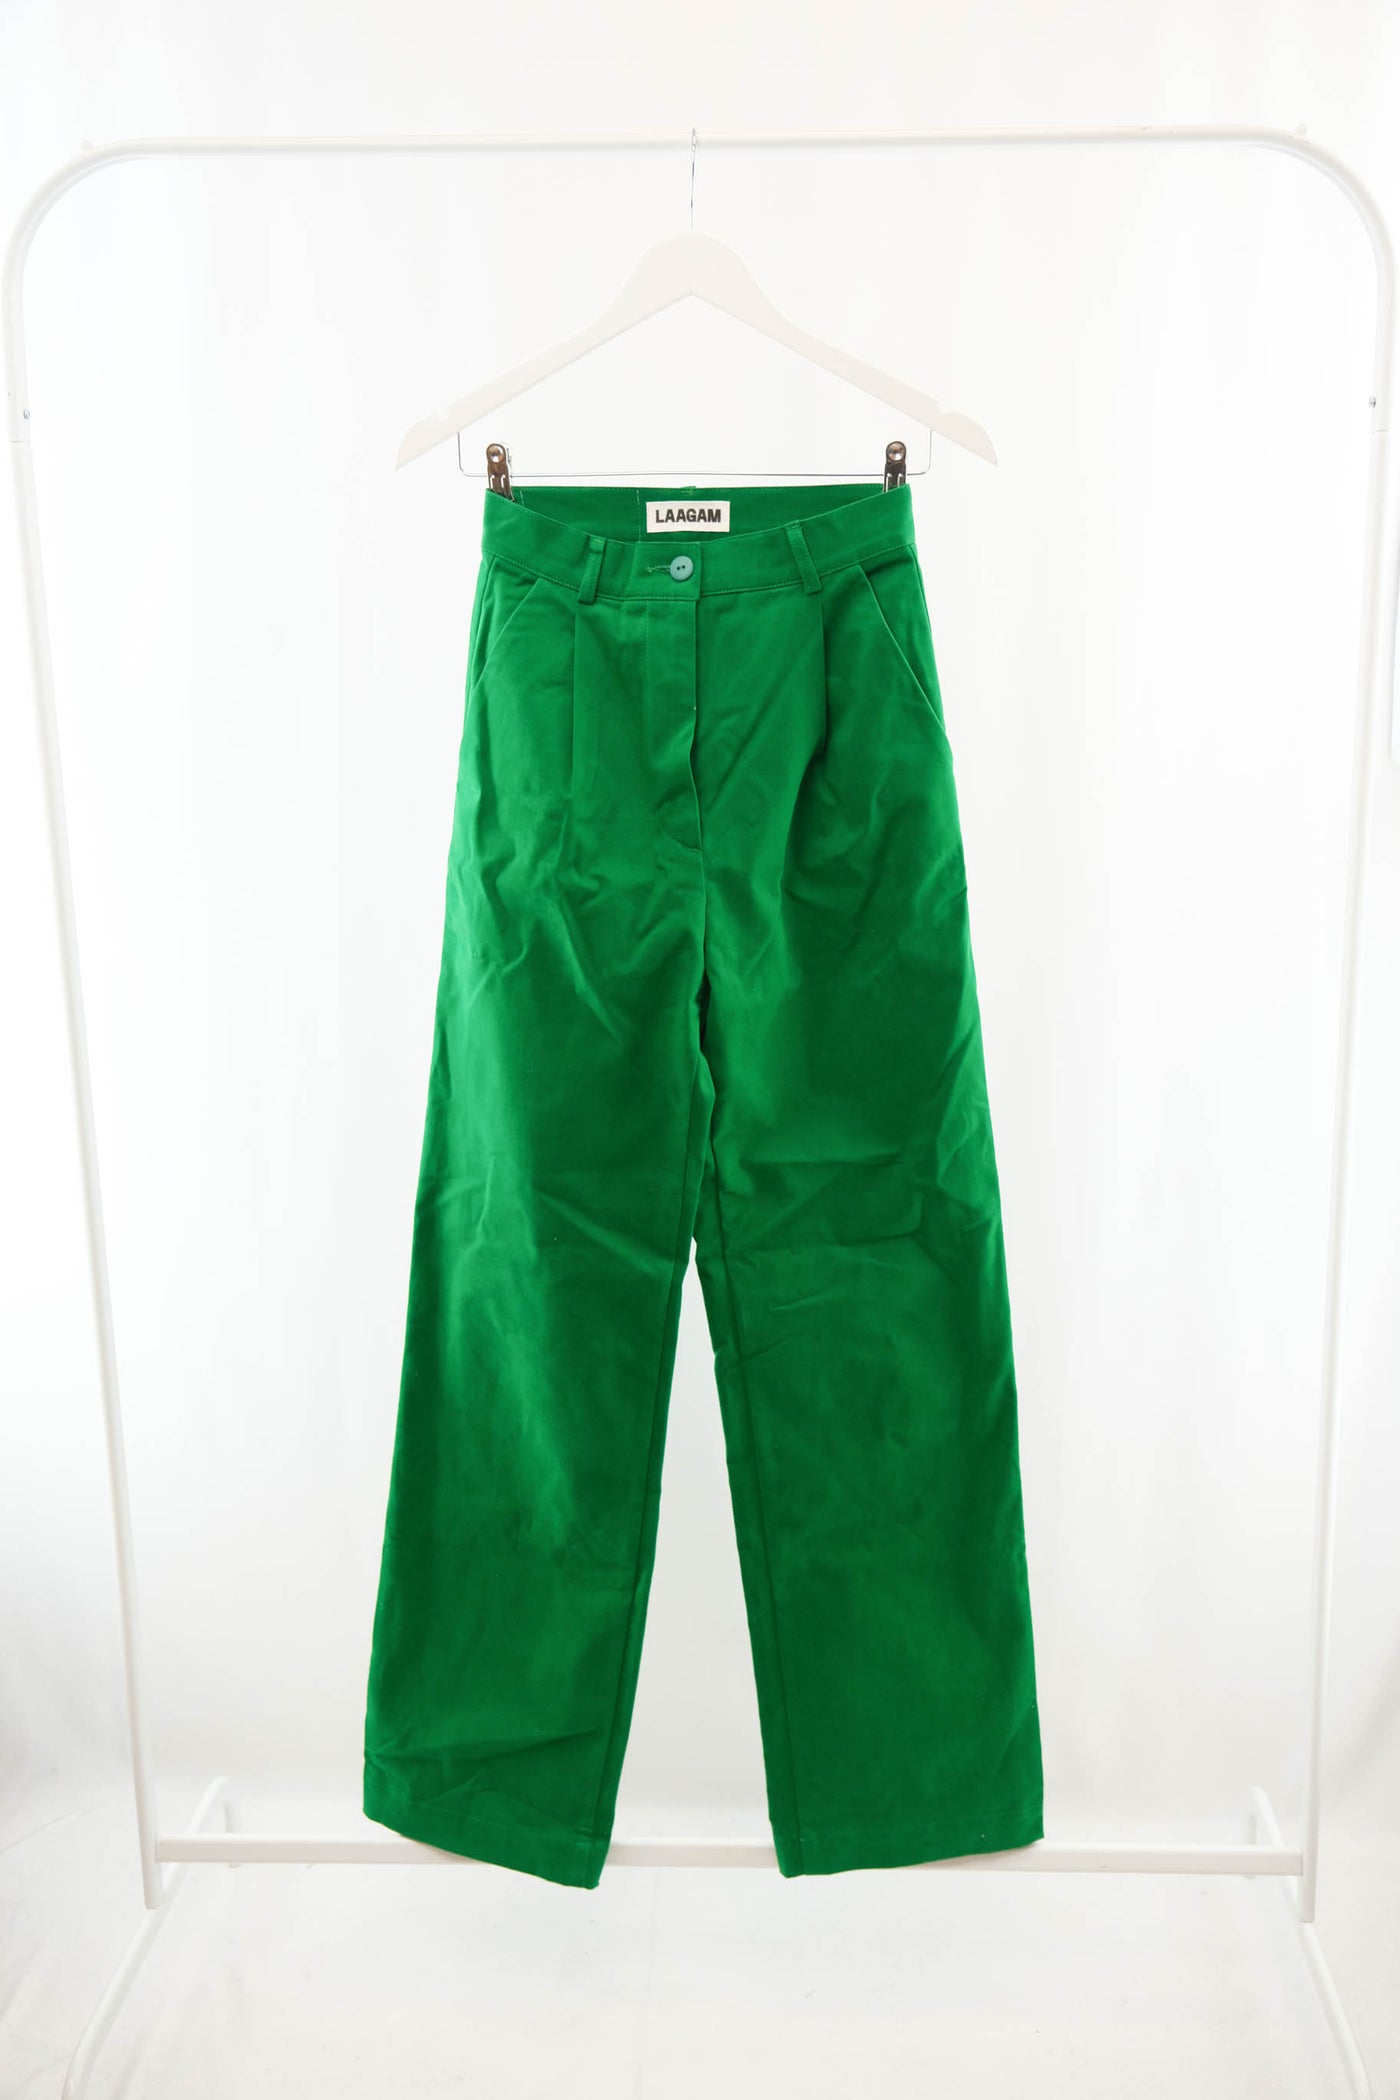 Pantalón verde